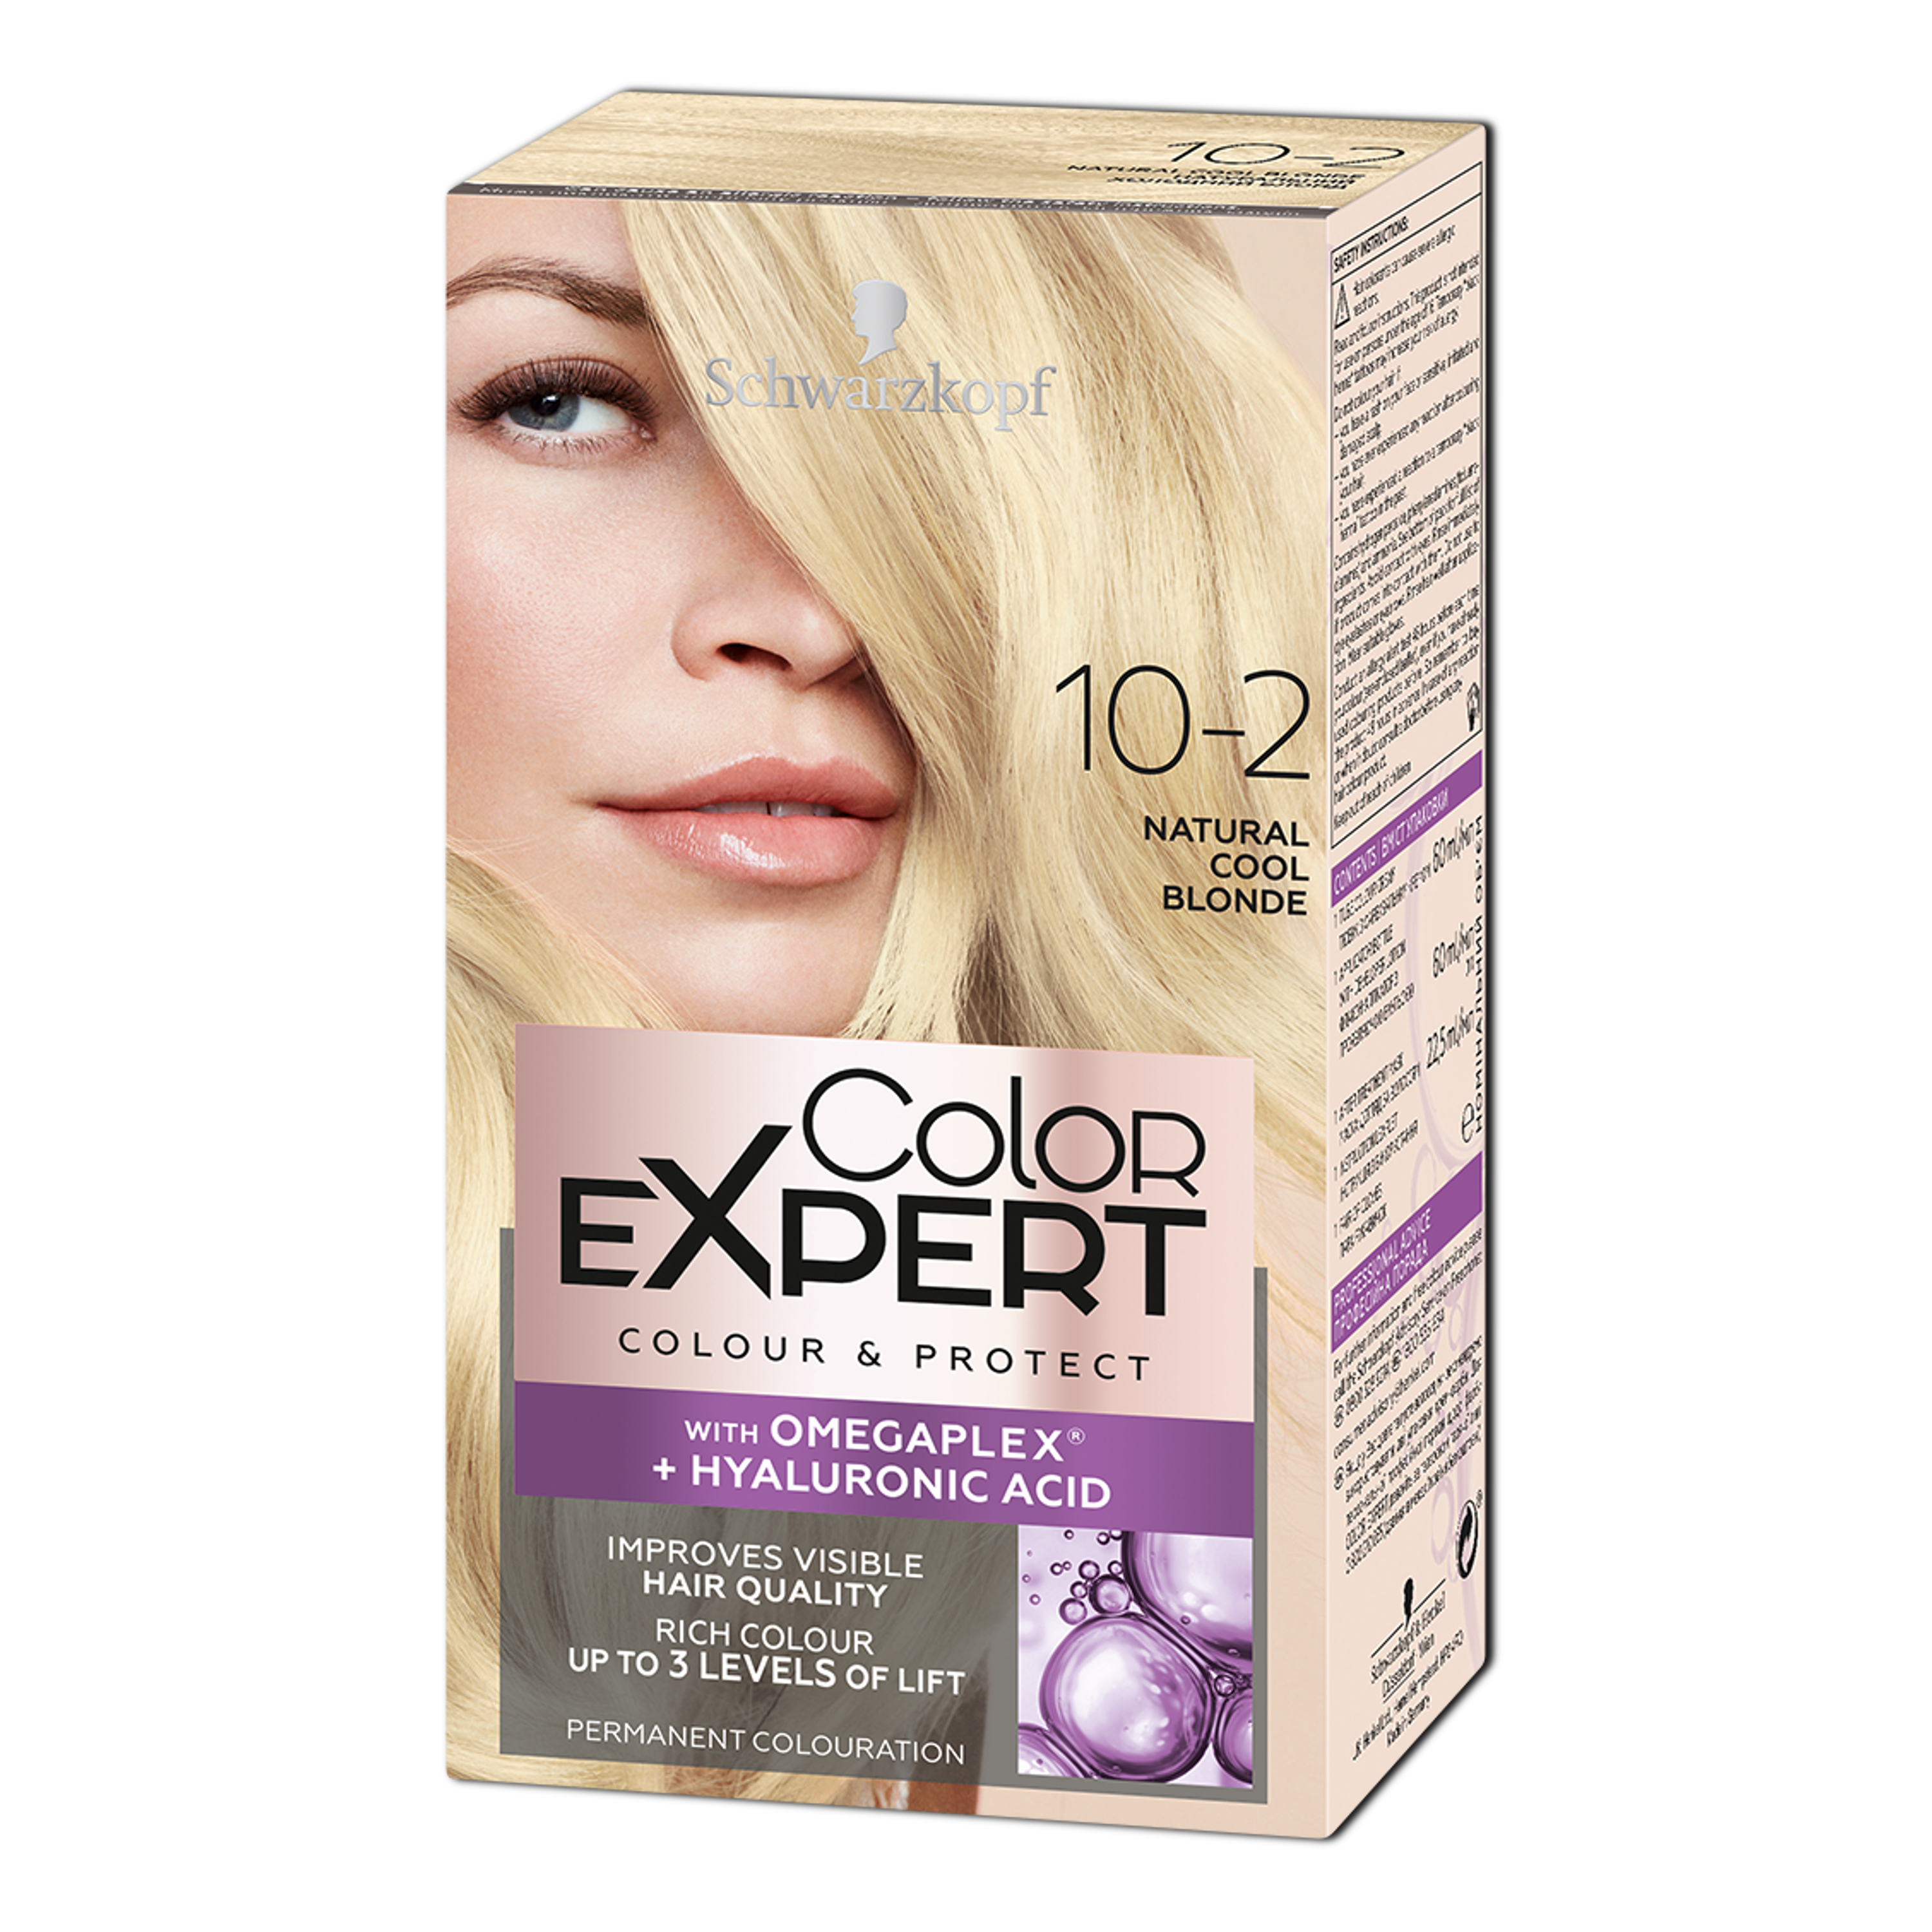 Крем-краска для волос Schwarzkopf Color Expert, с гиалуроновой кислотой, тон 10-2 (Натуральный Холодный Блонд), 142,5 мл - фото 1